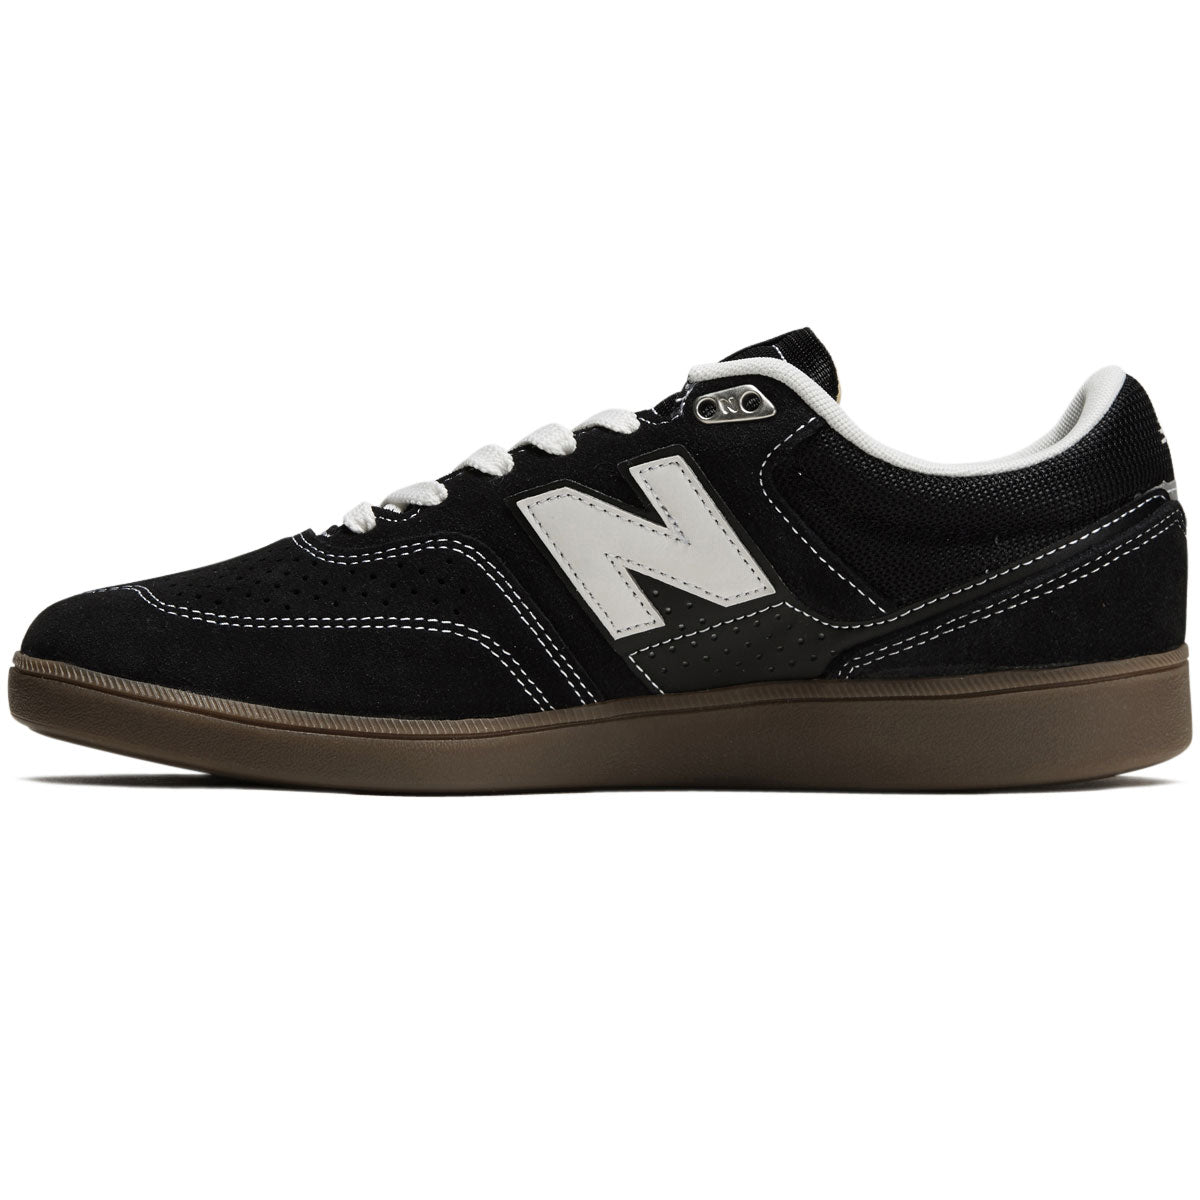 New Balance 508 Westgate Shoes - Black/Gum/White image 2